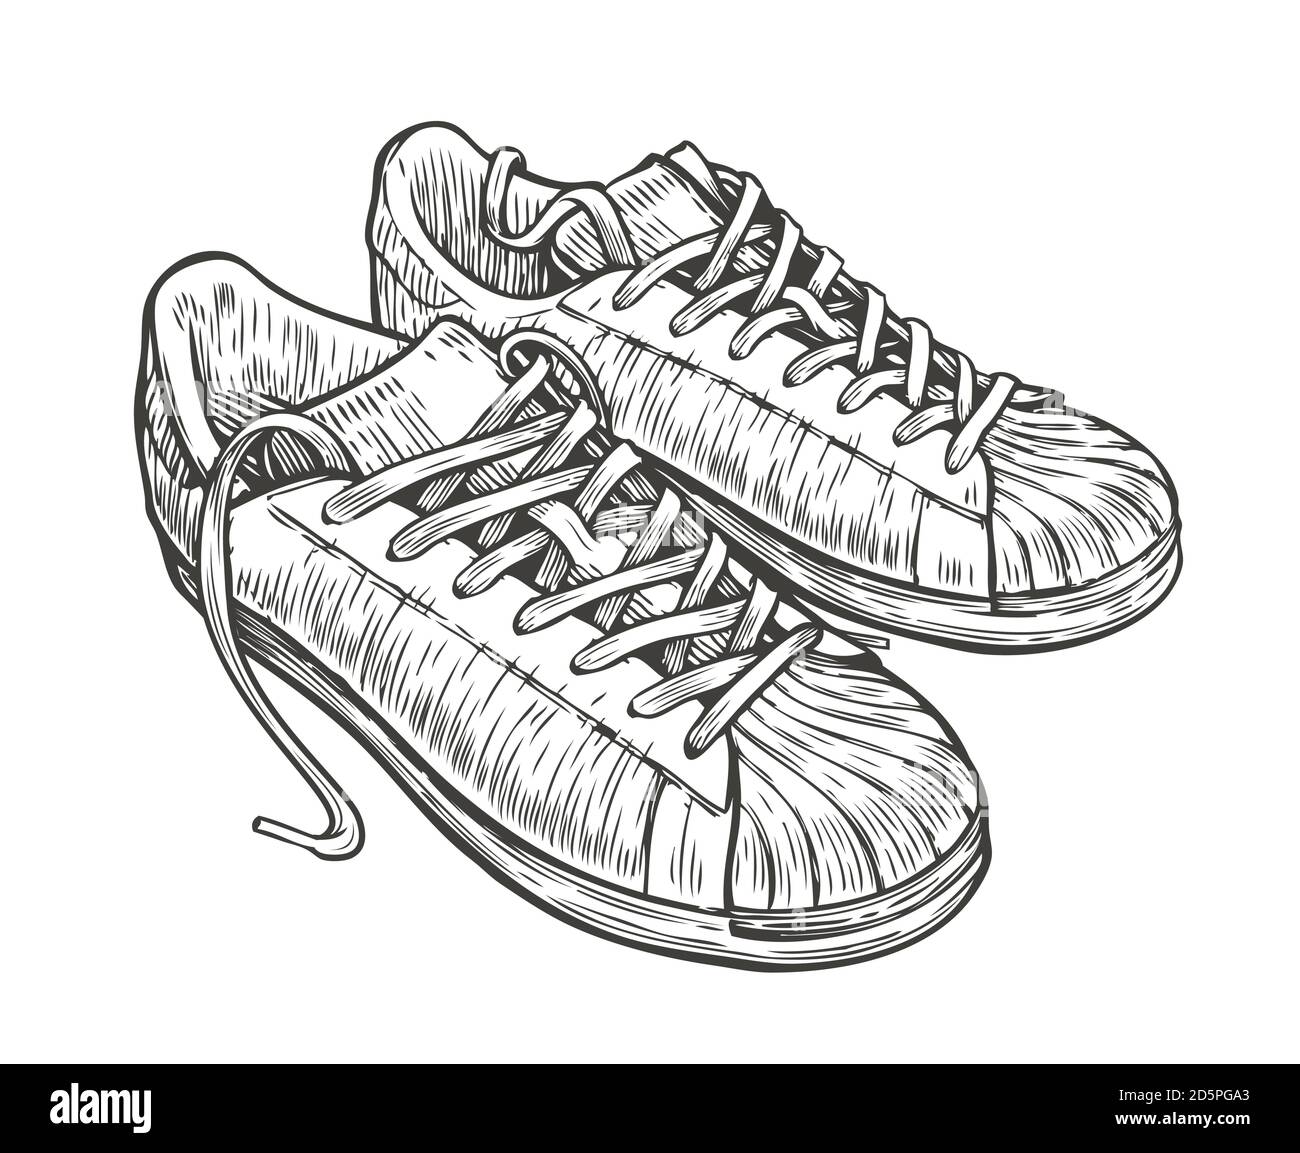 9101 Running Shoe Sketch Images Stock Photos  Vectors  Shutterstock